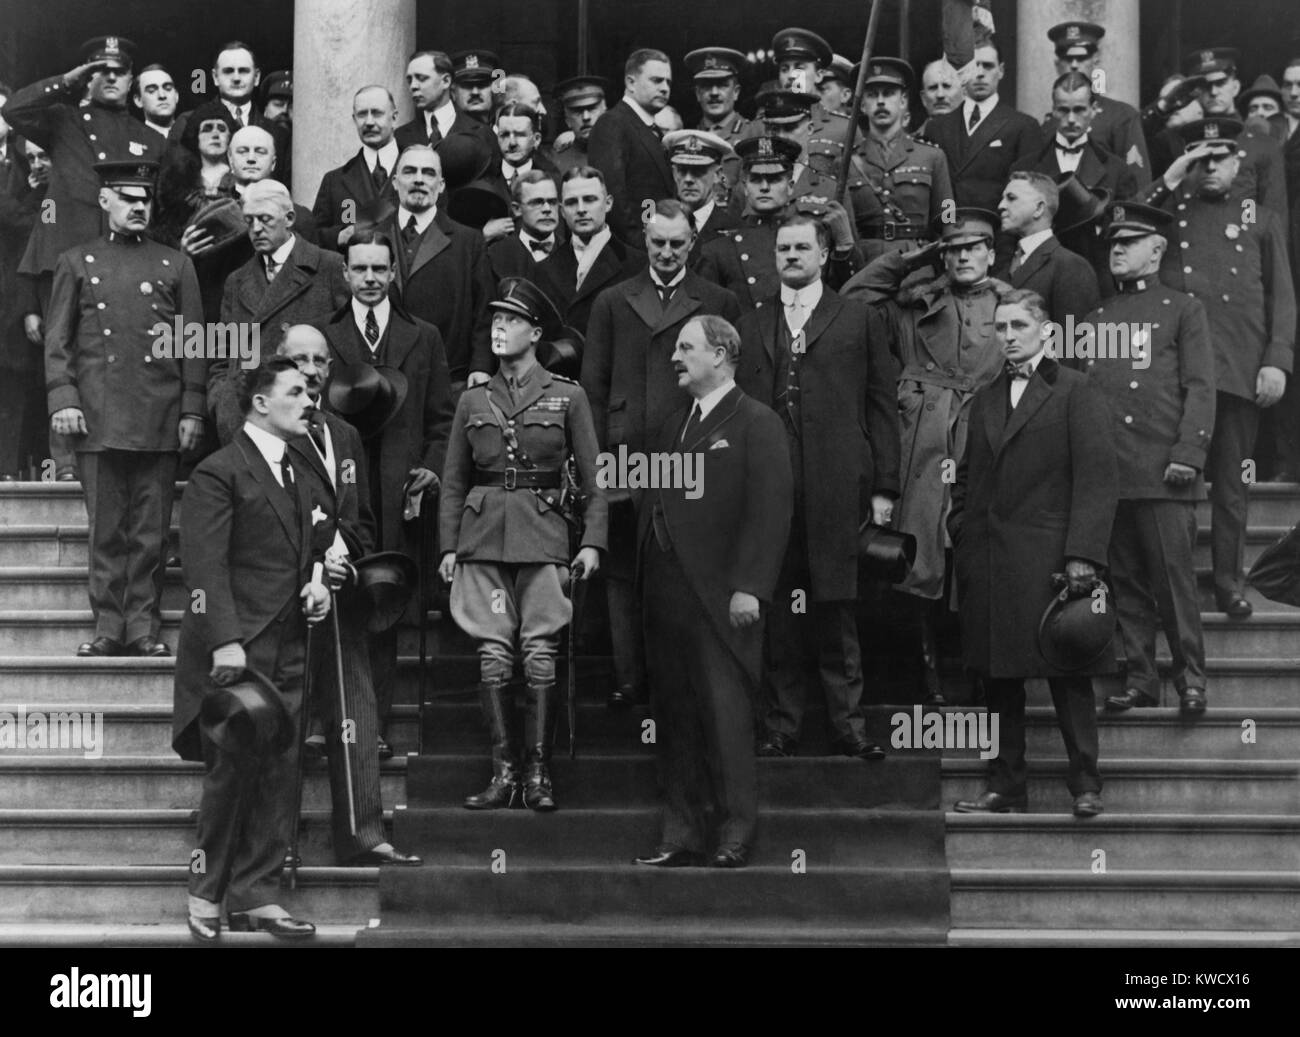 Prinz von Wales, der Zukunft Edward VIII., von Großbritannien, in New York City, 1919. Das Tragen einer Uniform und stehen auf den Stufen der Woolworth Building, er ist umgeben von namhaften amerikanischen Männern (BSLOC 2017 1 86) Stockfoto